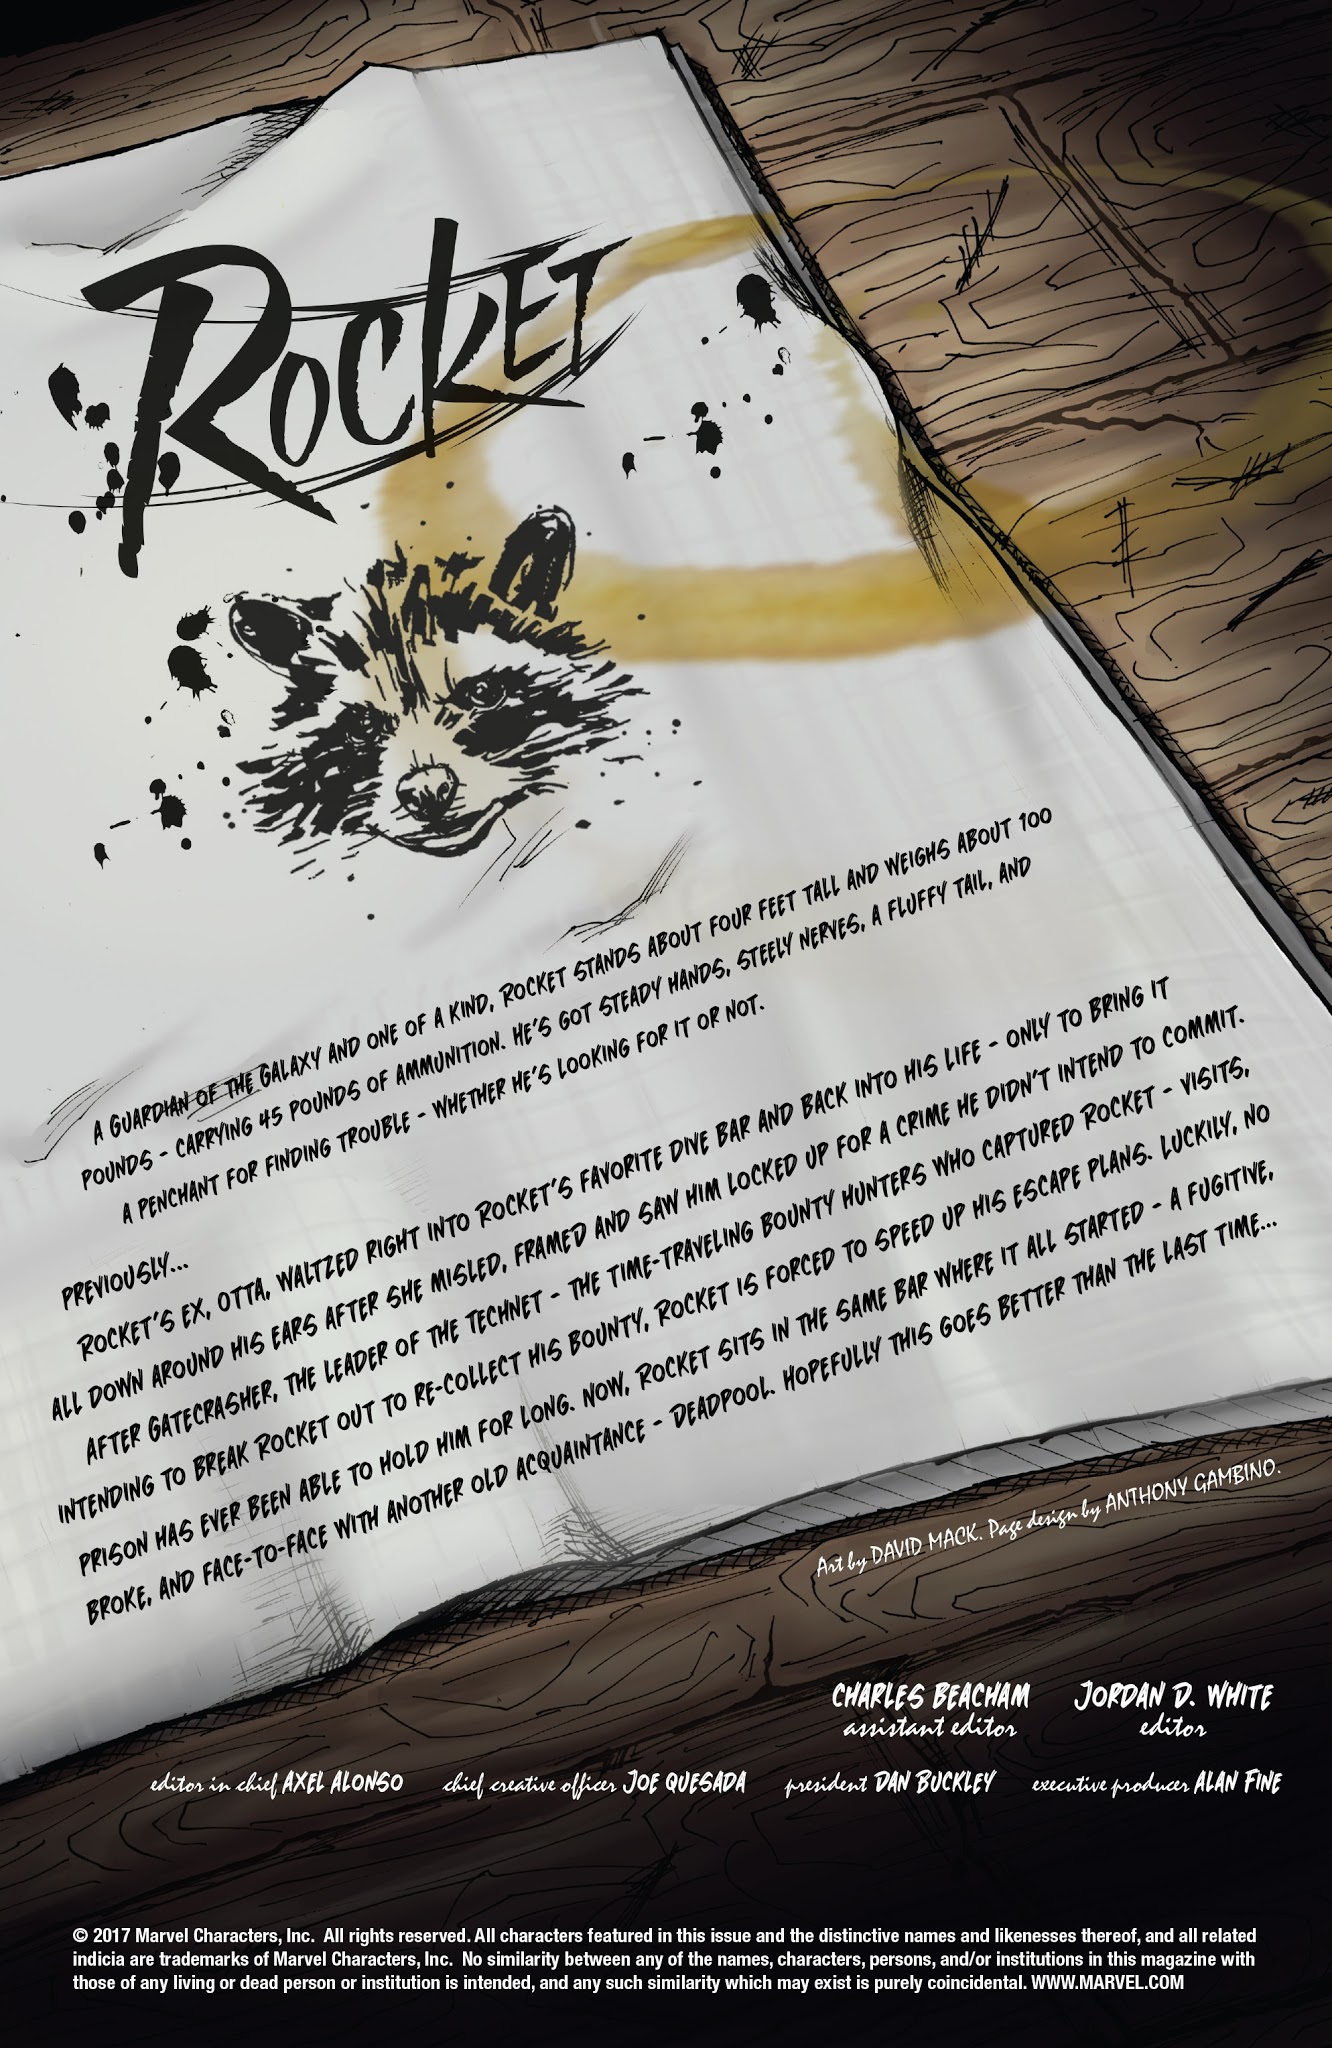 Read online Rocket comic -  Issue #4 - 2